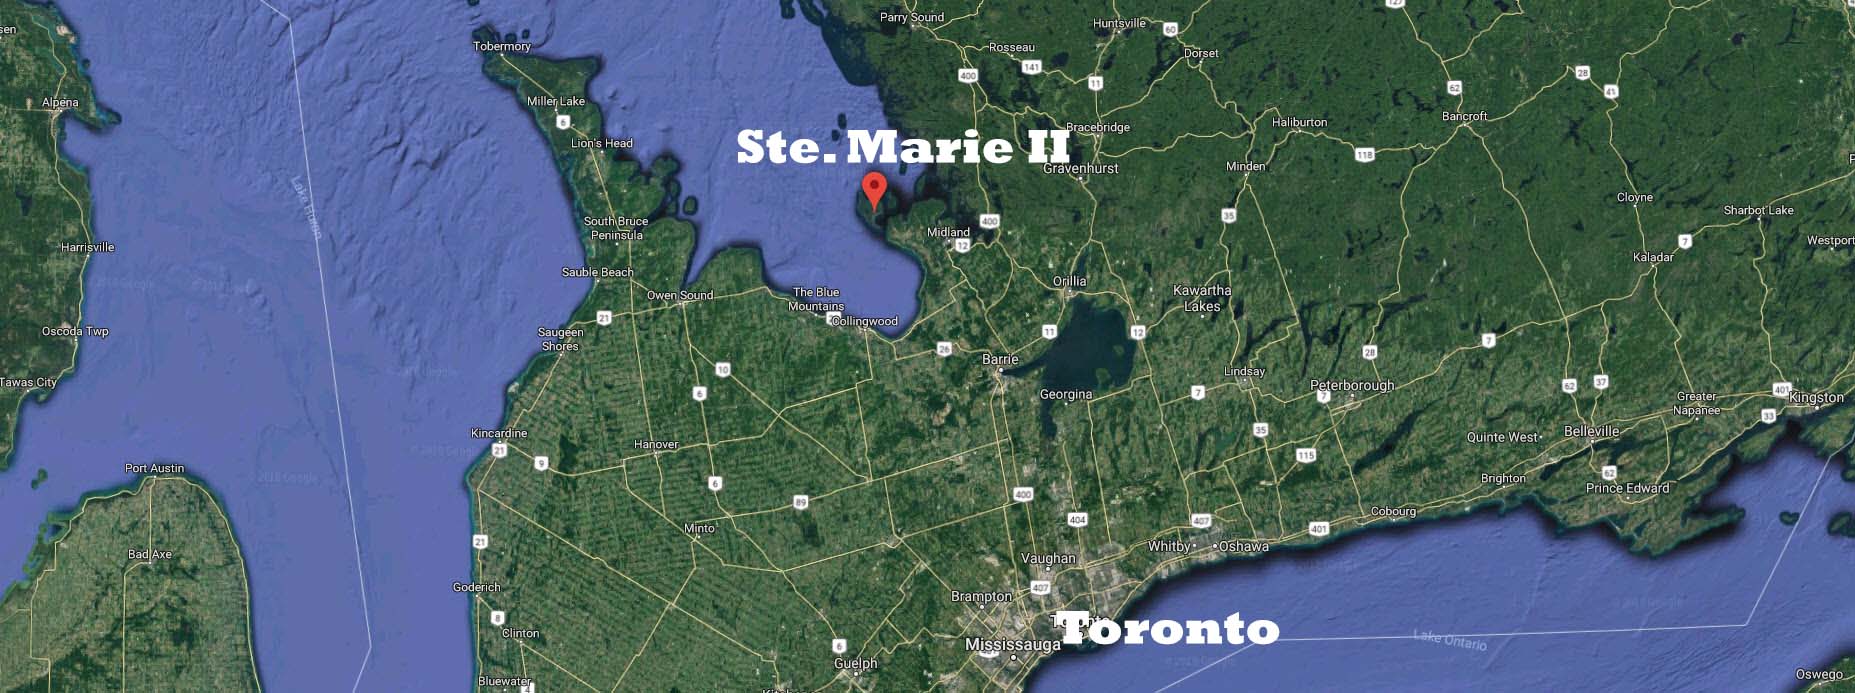 Carte du Sud de l’Ontario, en couleurs, avec les noms de Ste Marie II et Toronto inscrits en lettres blanches. 